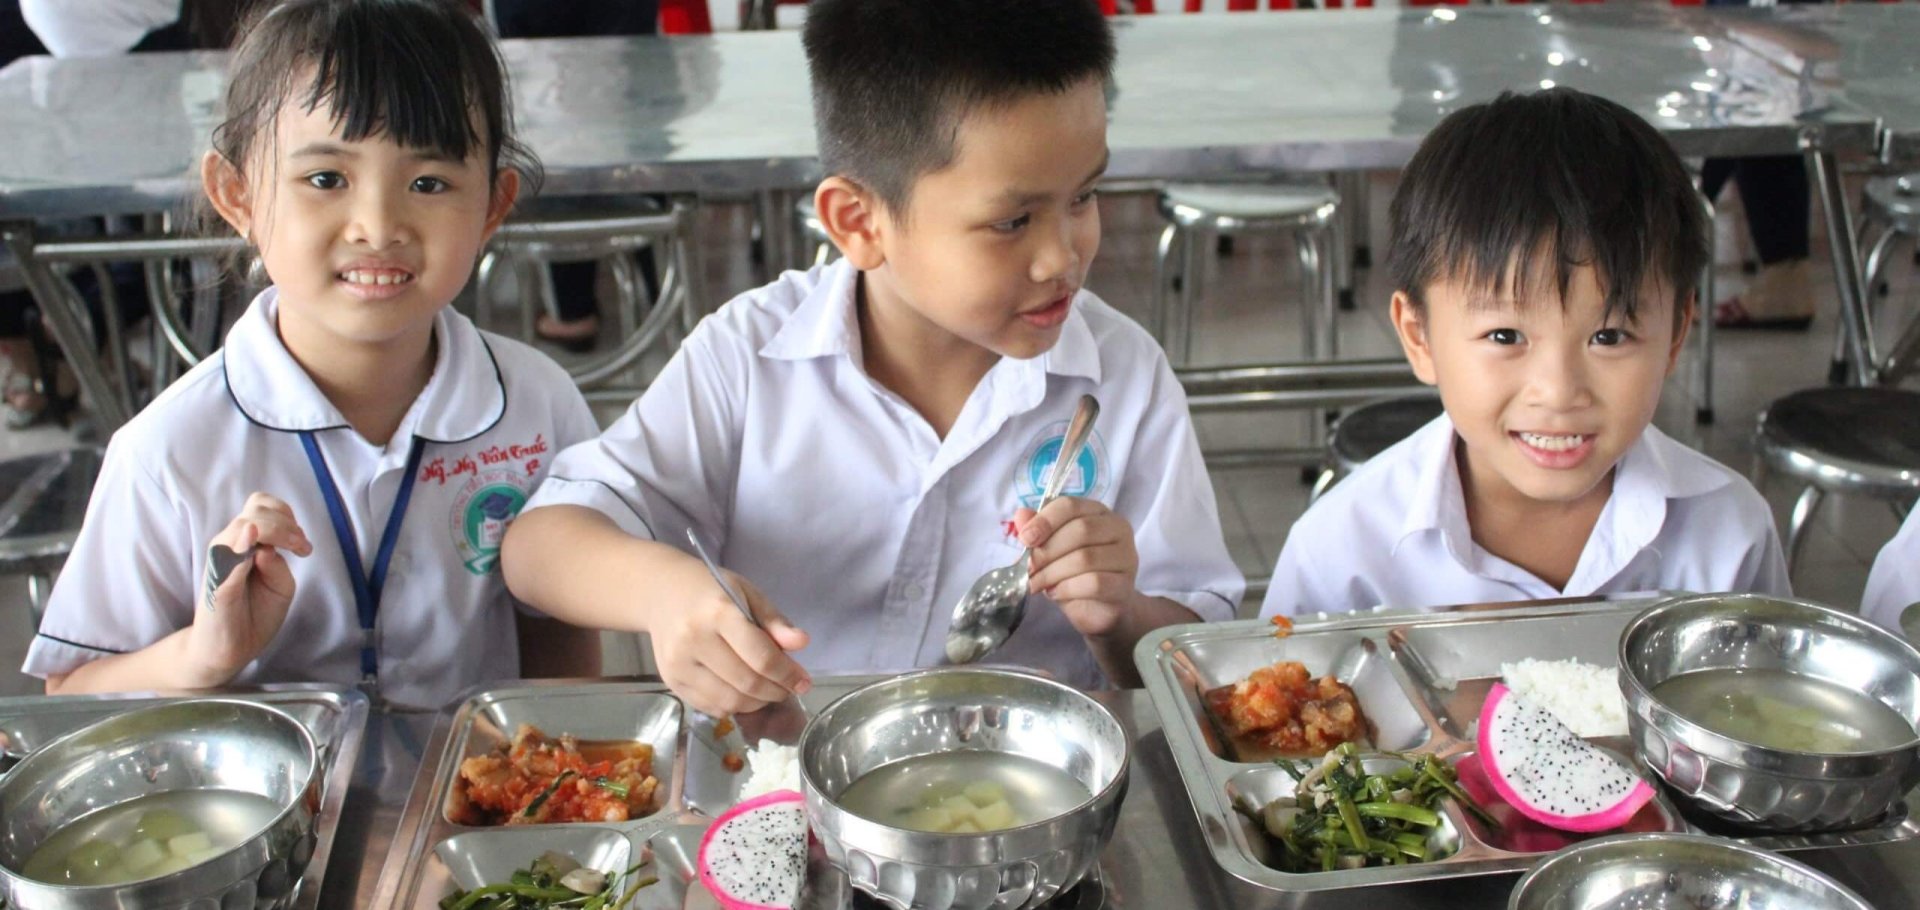 โครงการอาหารโรงเรียนเวียดนาม